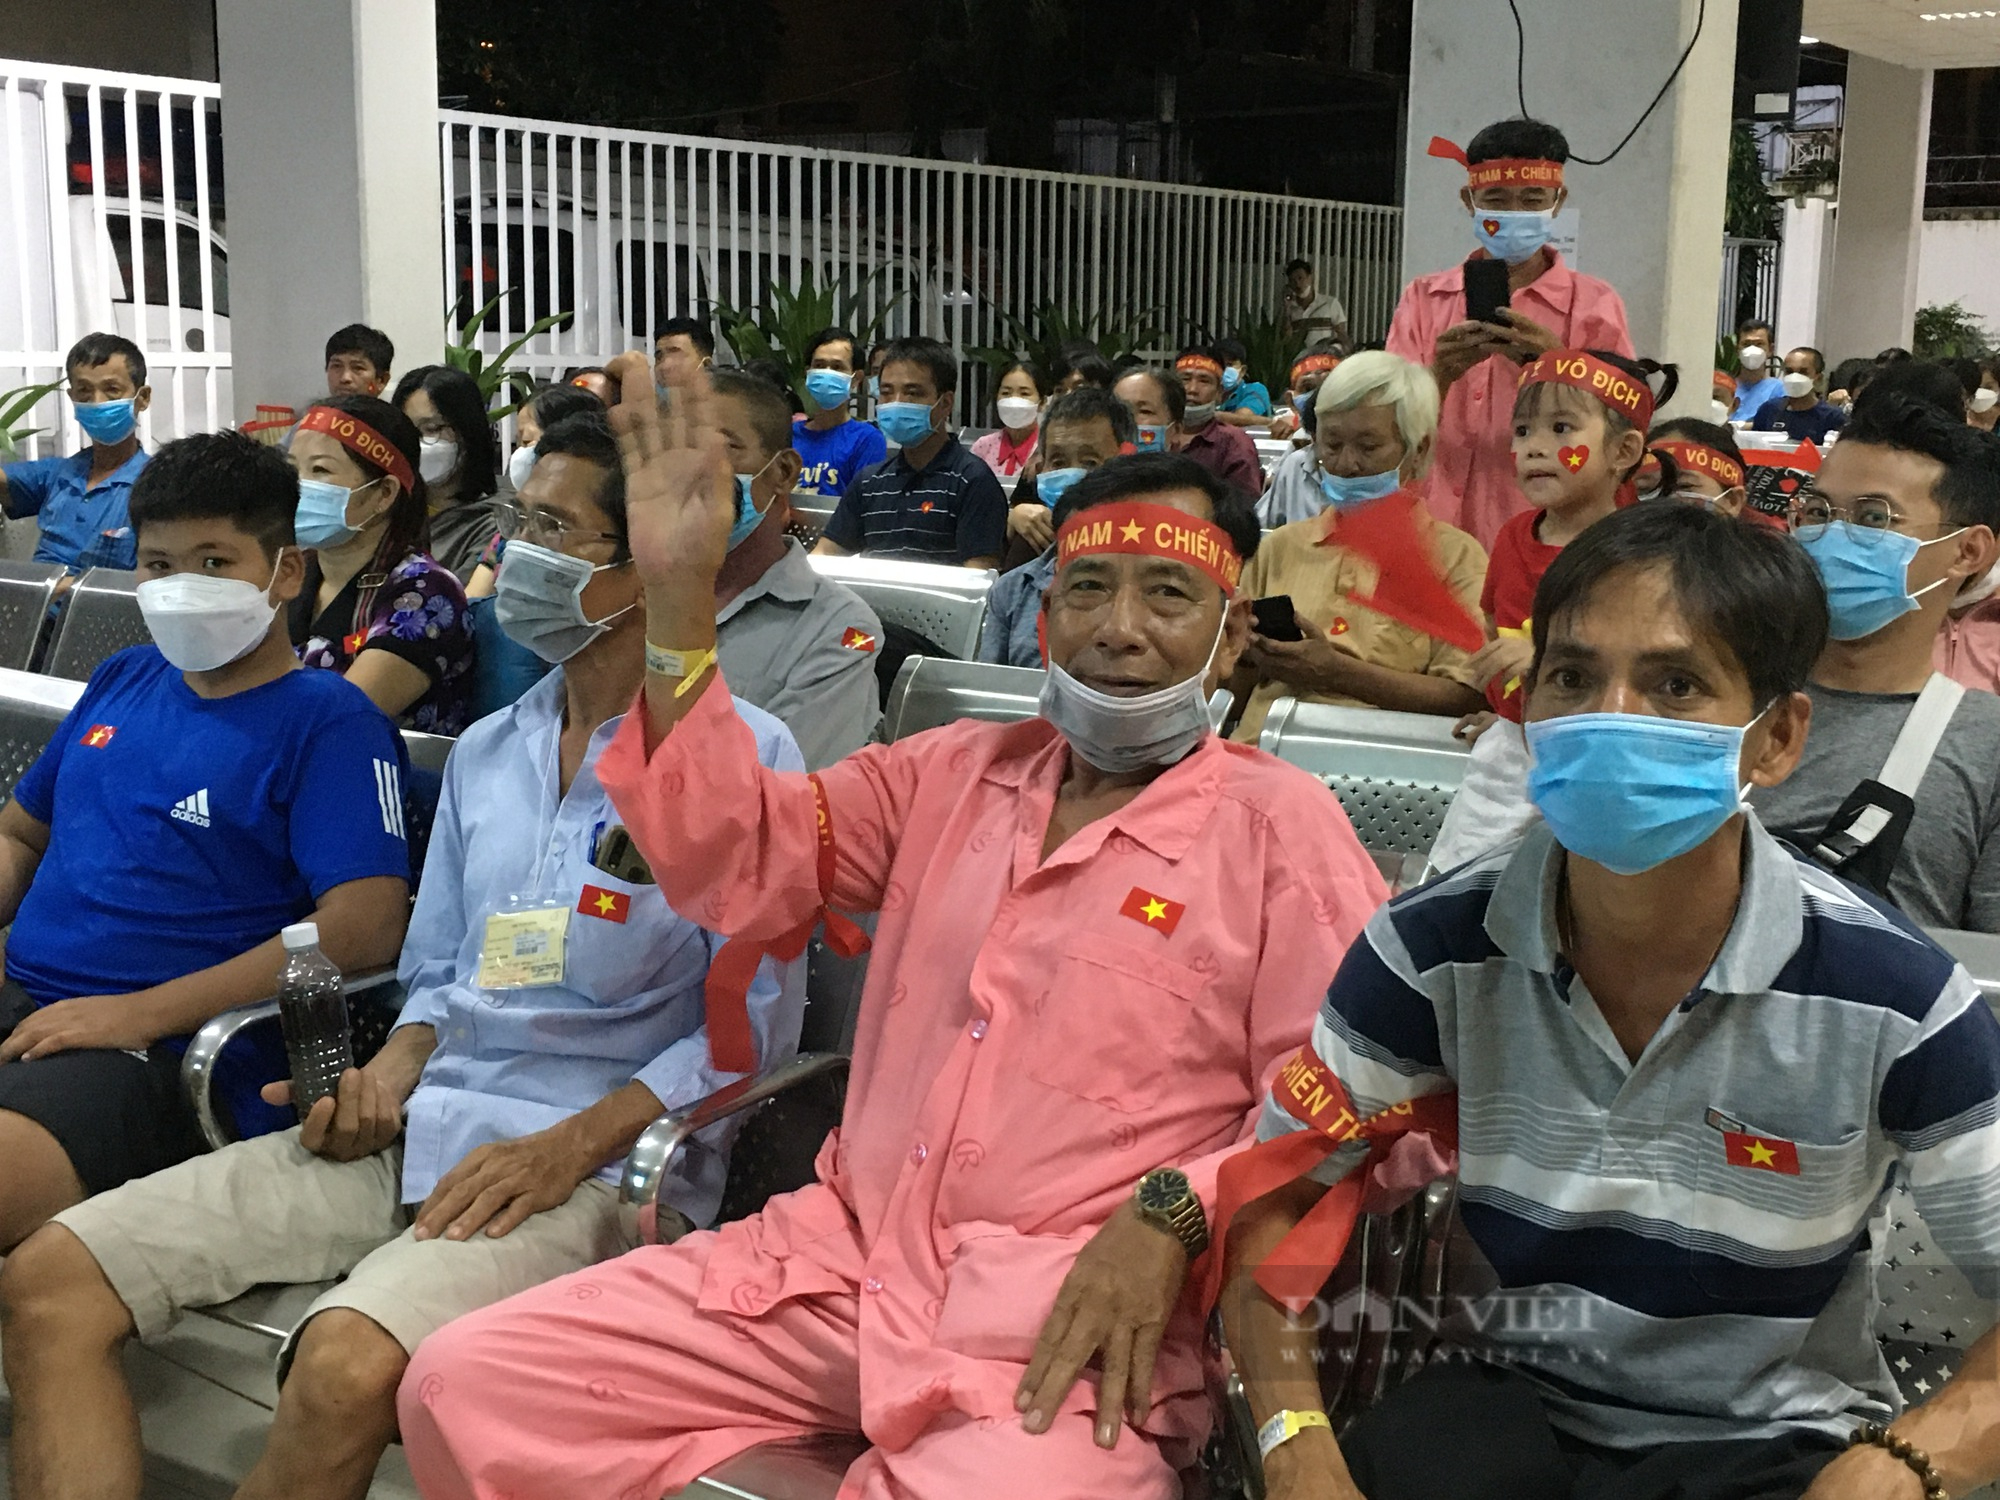 Bỏ qua cơn đau bệnh tật, bệnh nhân vỡ oà niềm vui chiến thắng với U23 Việt Nam - Ảnh 3.